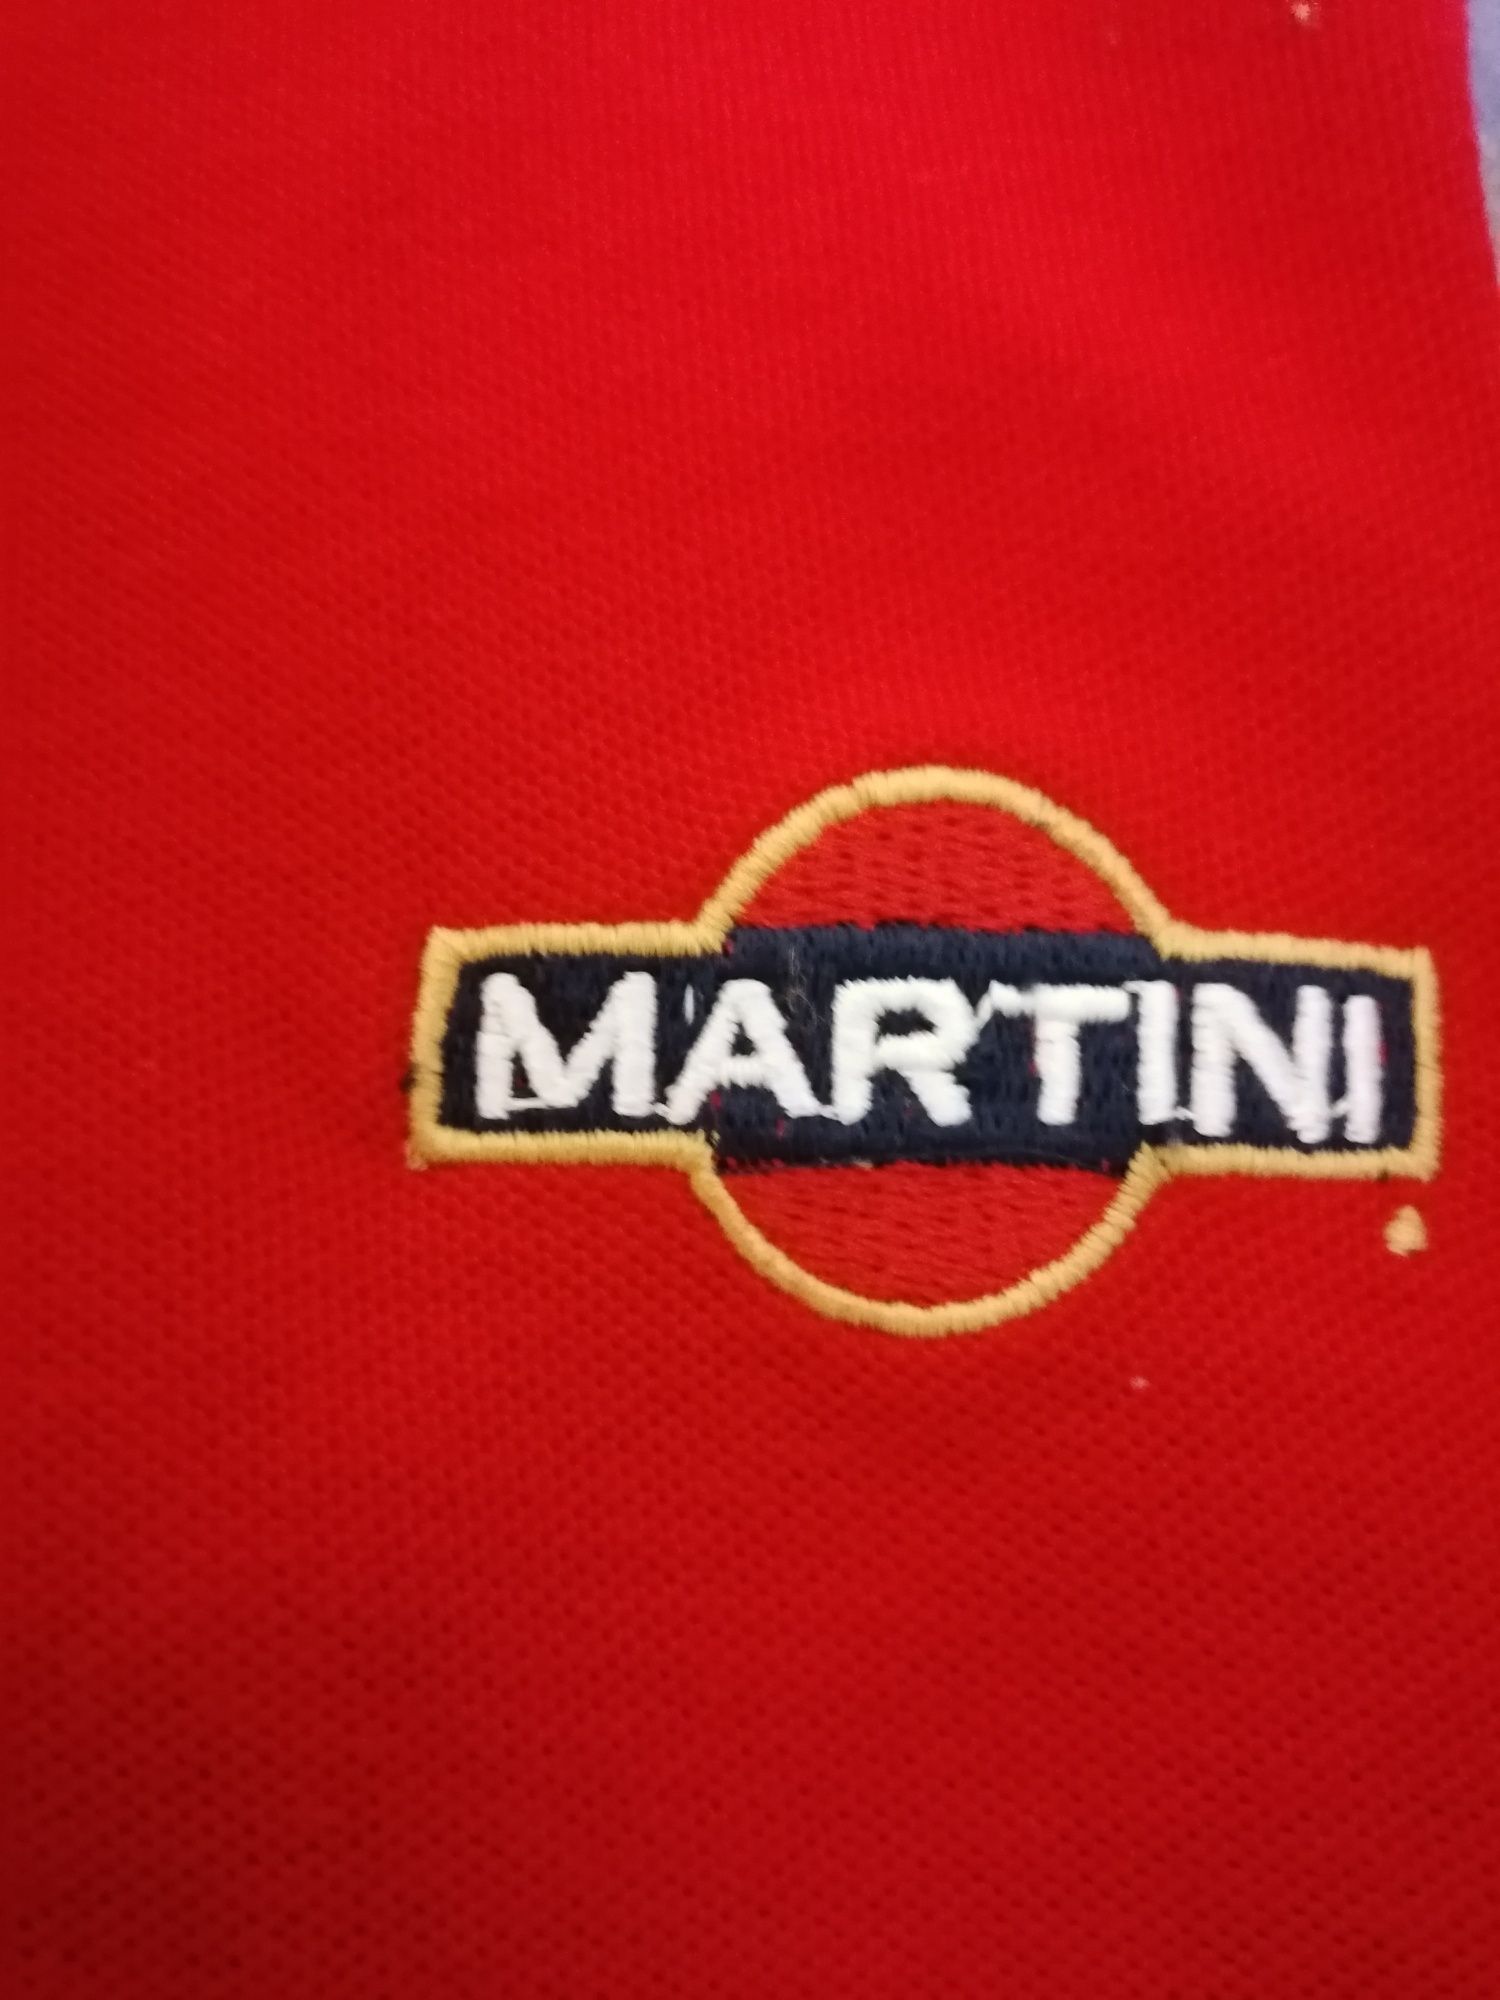 Pólo com publicidade à marca Martini